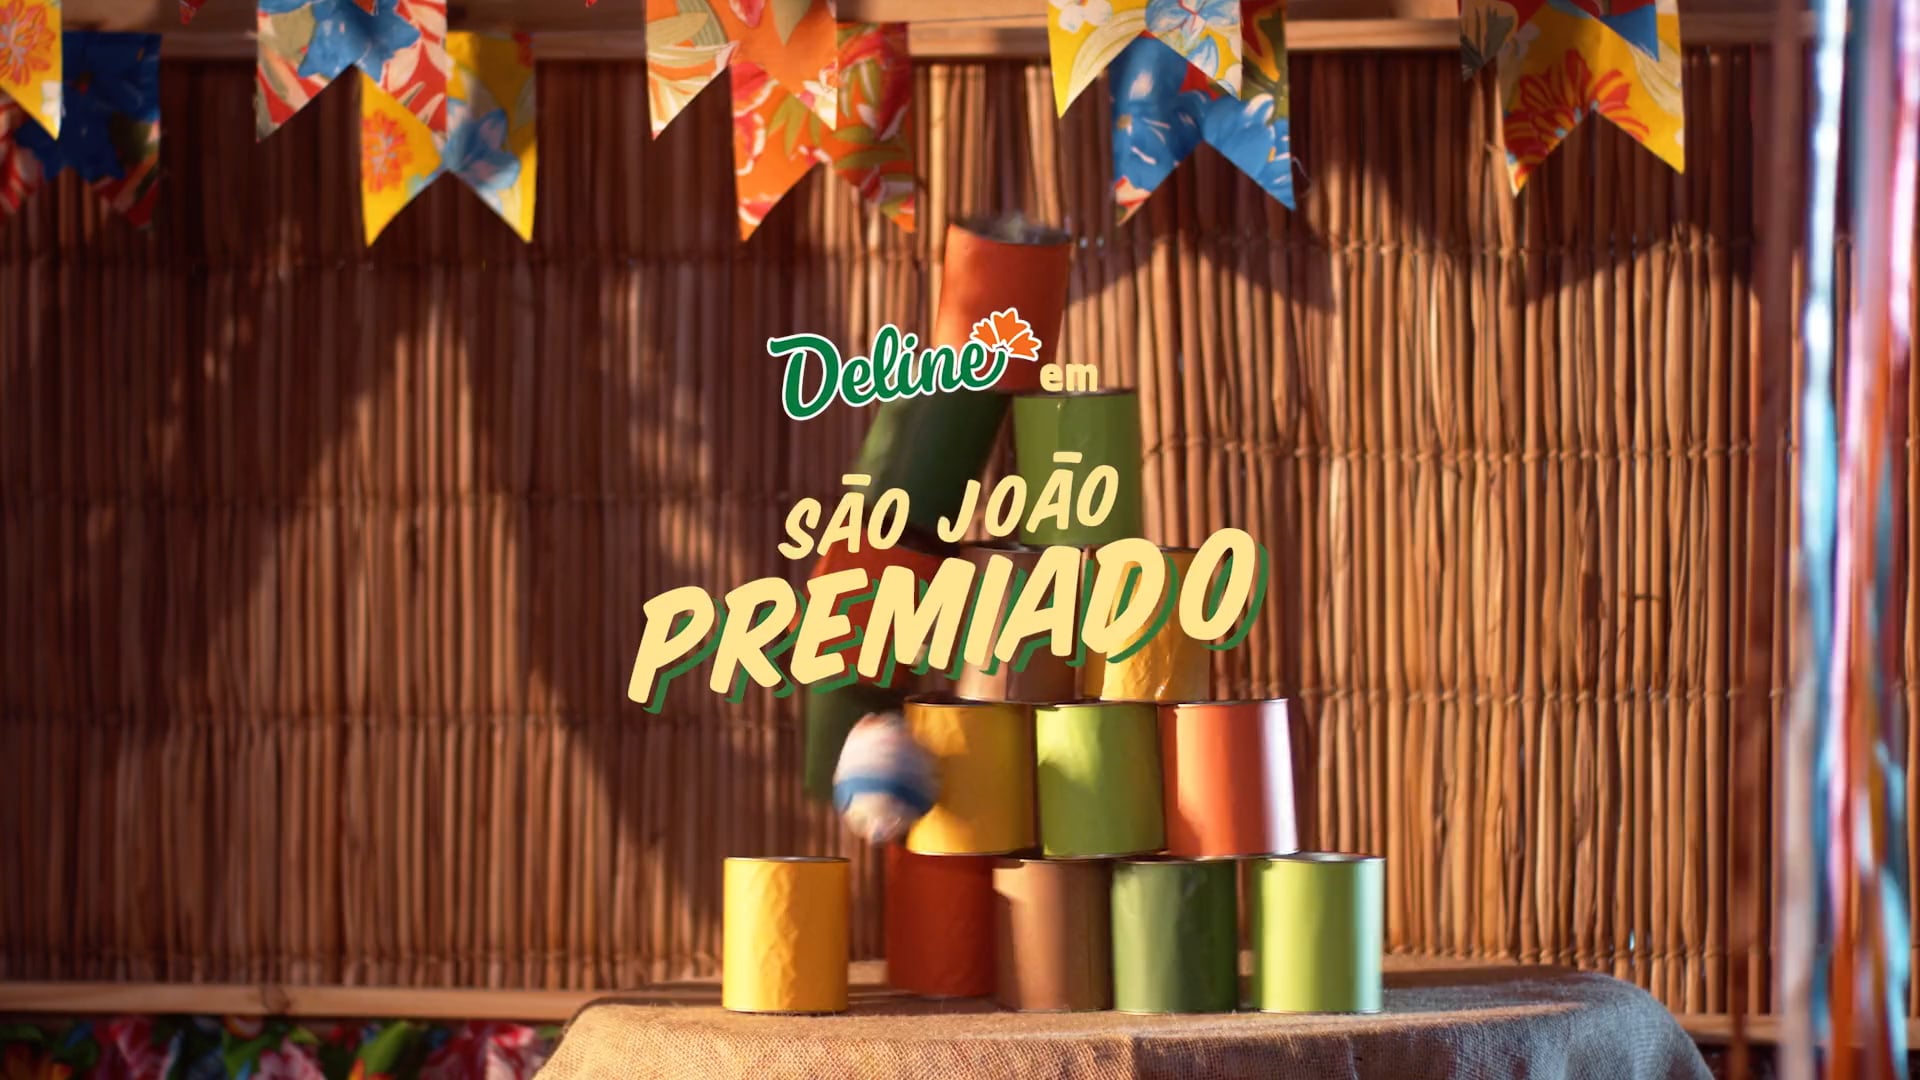 Deline - São João